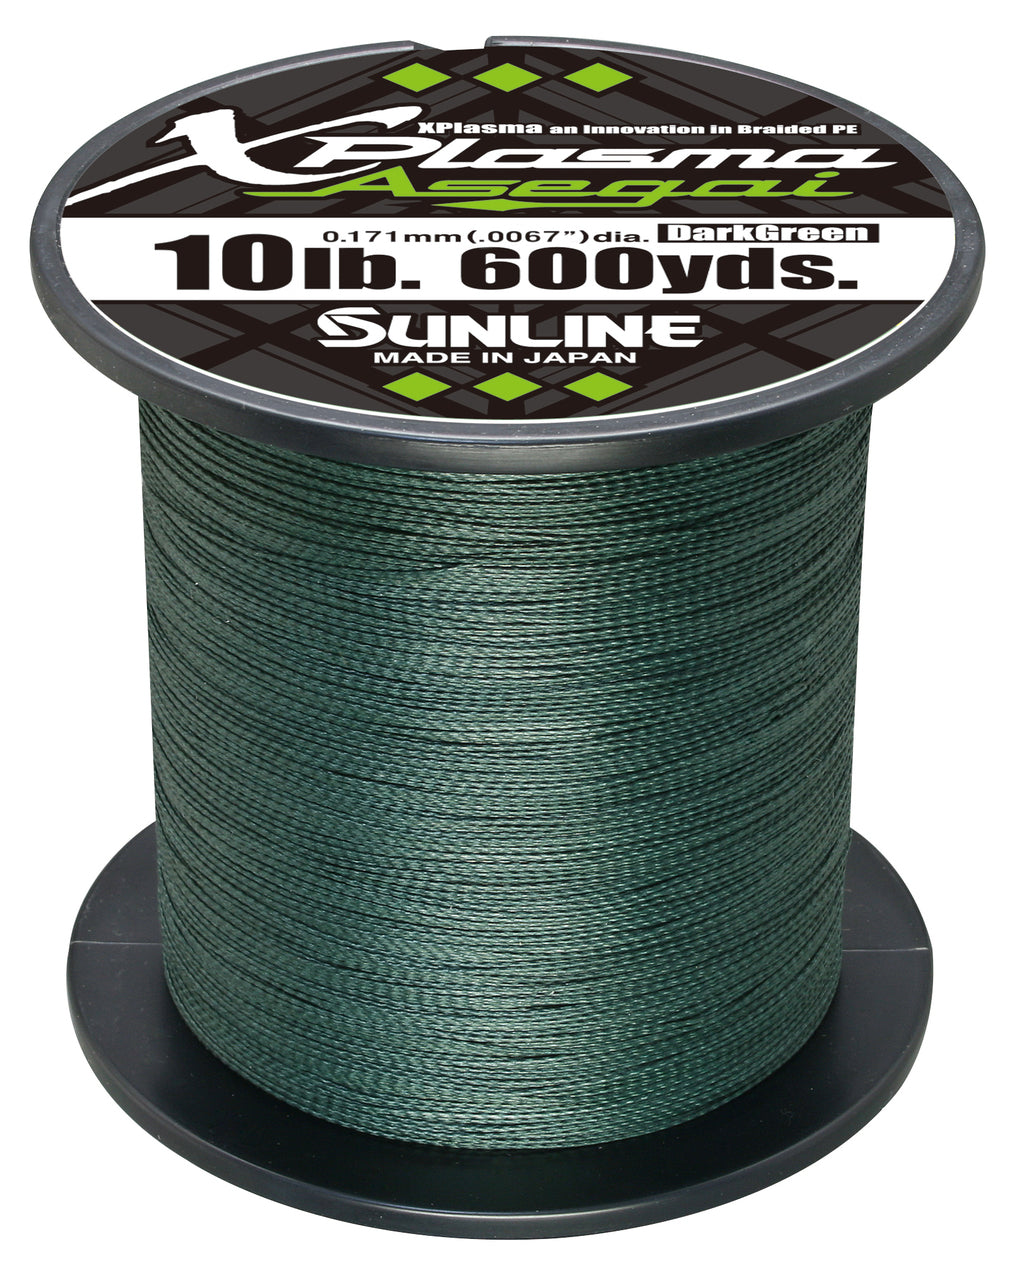 Sunline Xplasma Asegai 600yd, Dark Green / 60lb